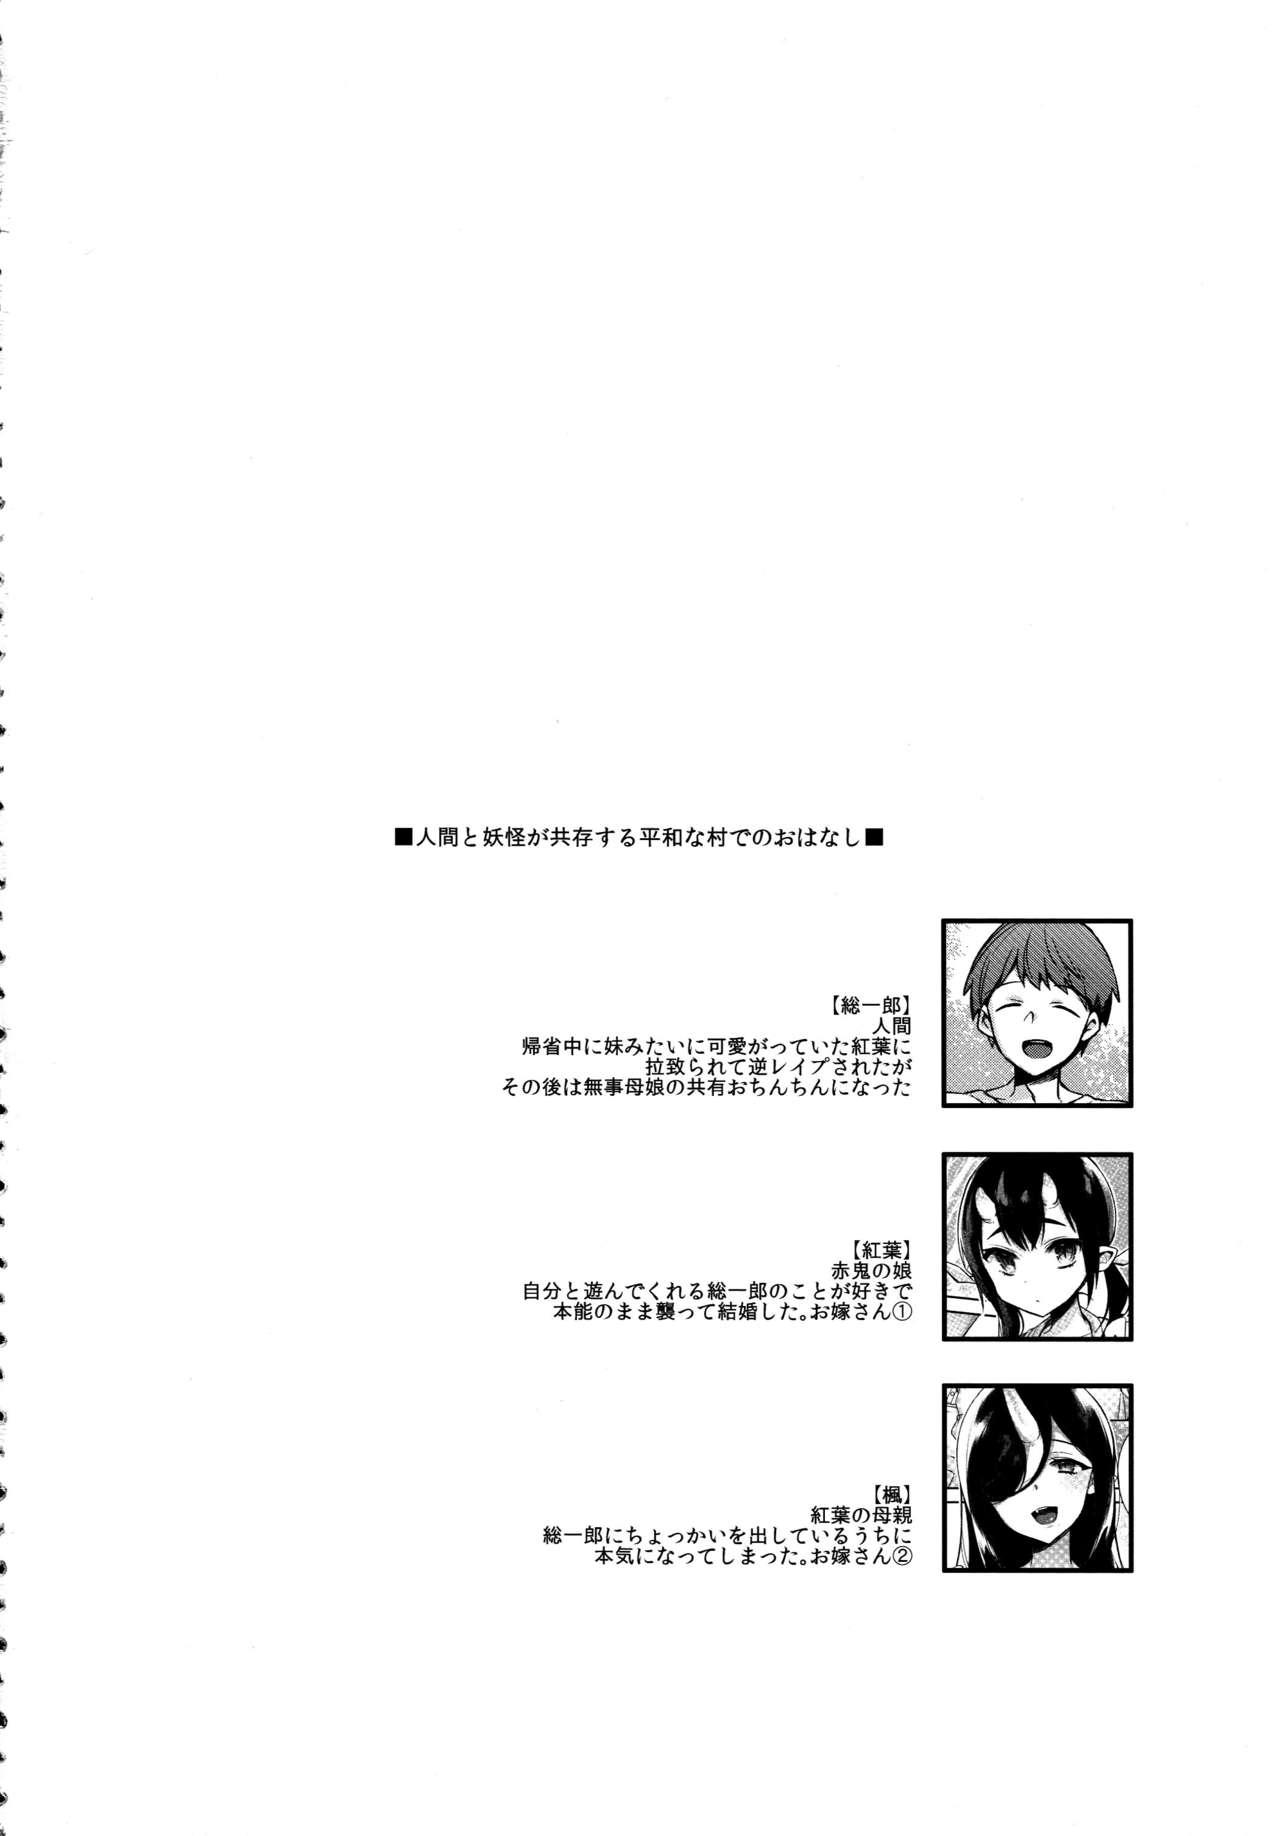 Buttfucking Oni no Shimai wa Hito no Osu to Kozukuri ga Shitai - Original Leaked - Page 5